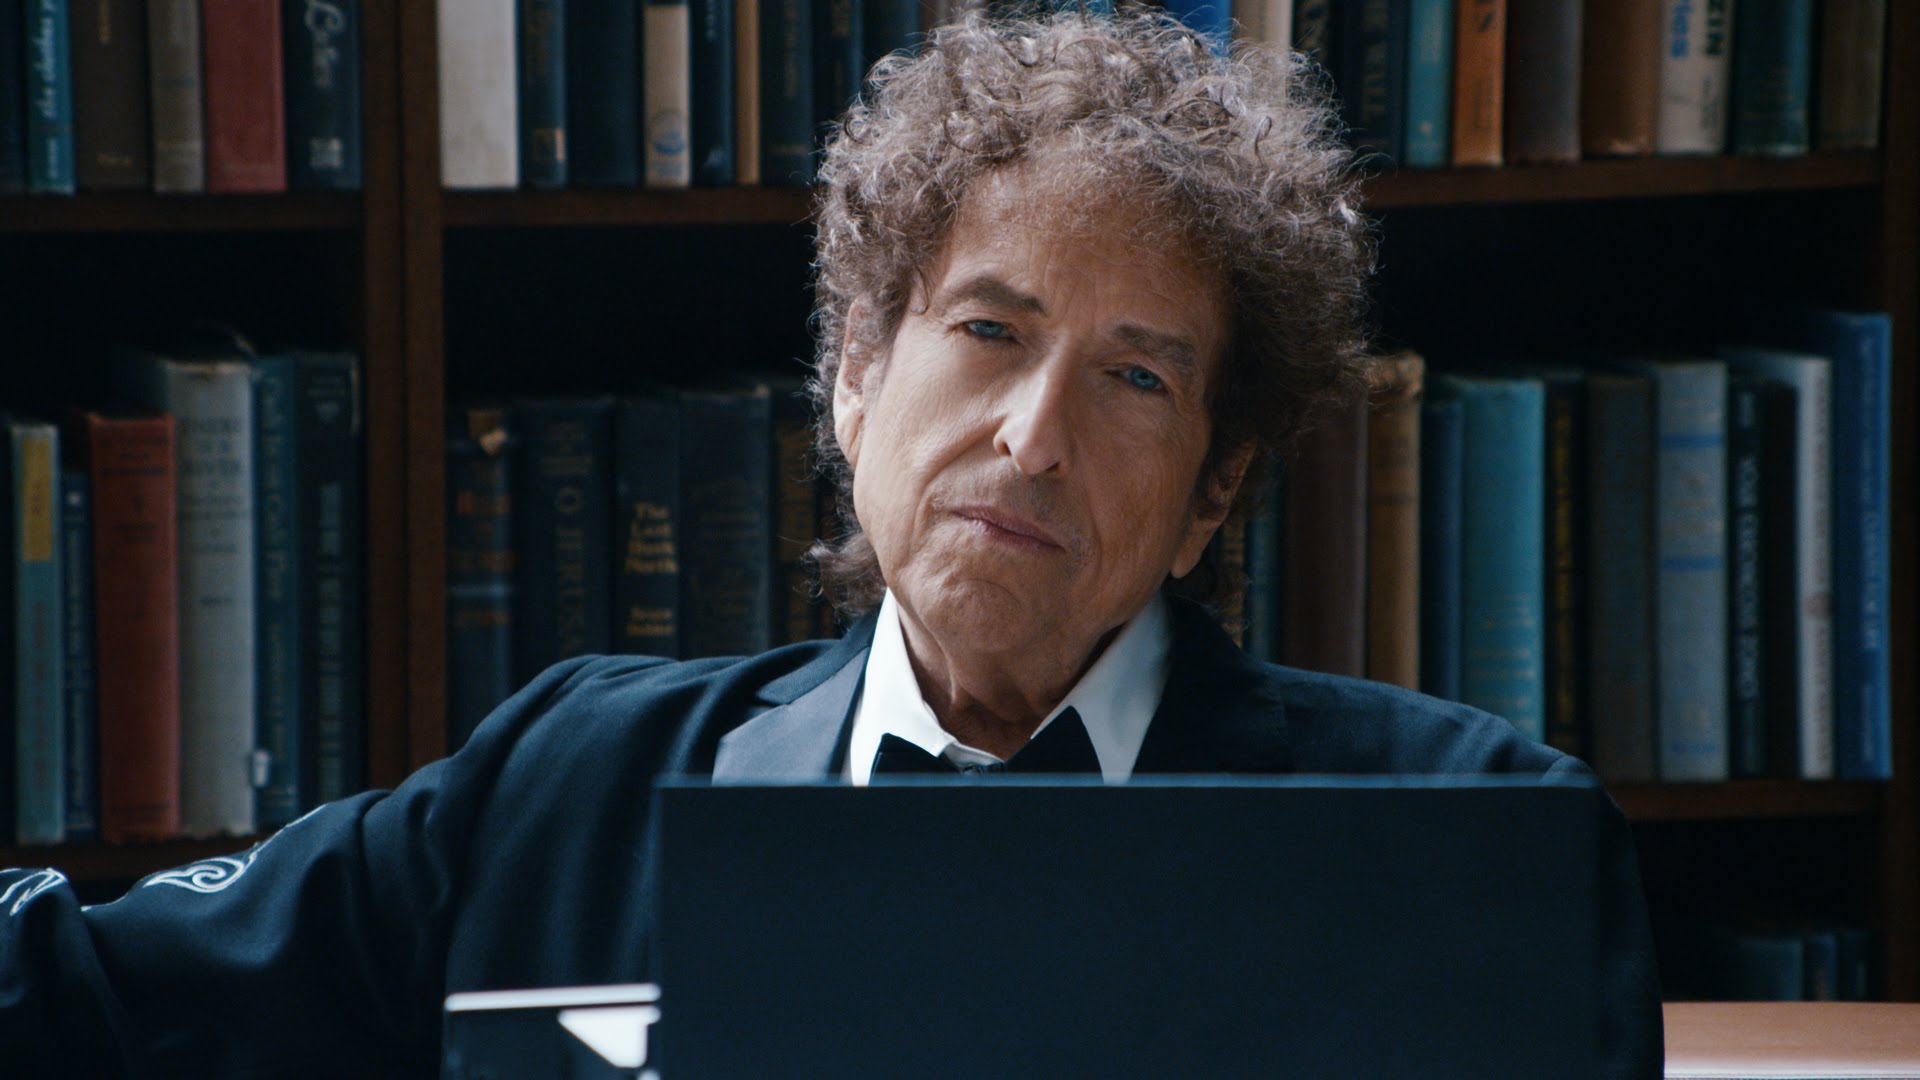 Cantor americano Bob Dylan em foto numa biblioteca , onde aparece seu rosto , cabelos desarrumados, rosto esguio, camisa branca e casaco preto. nariz afilado, olhos claros. Seu semblante é de contemplação de algo.